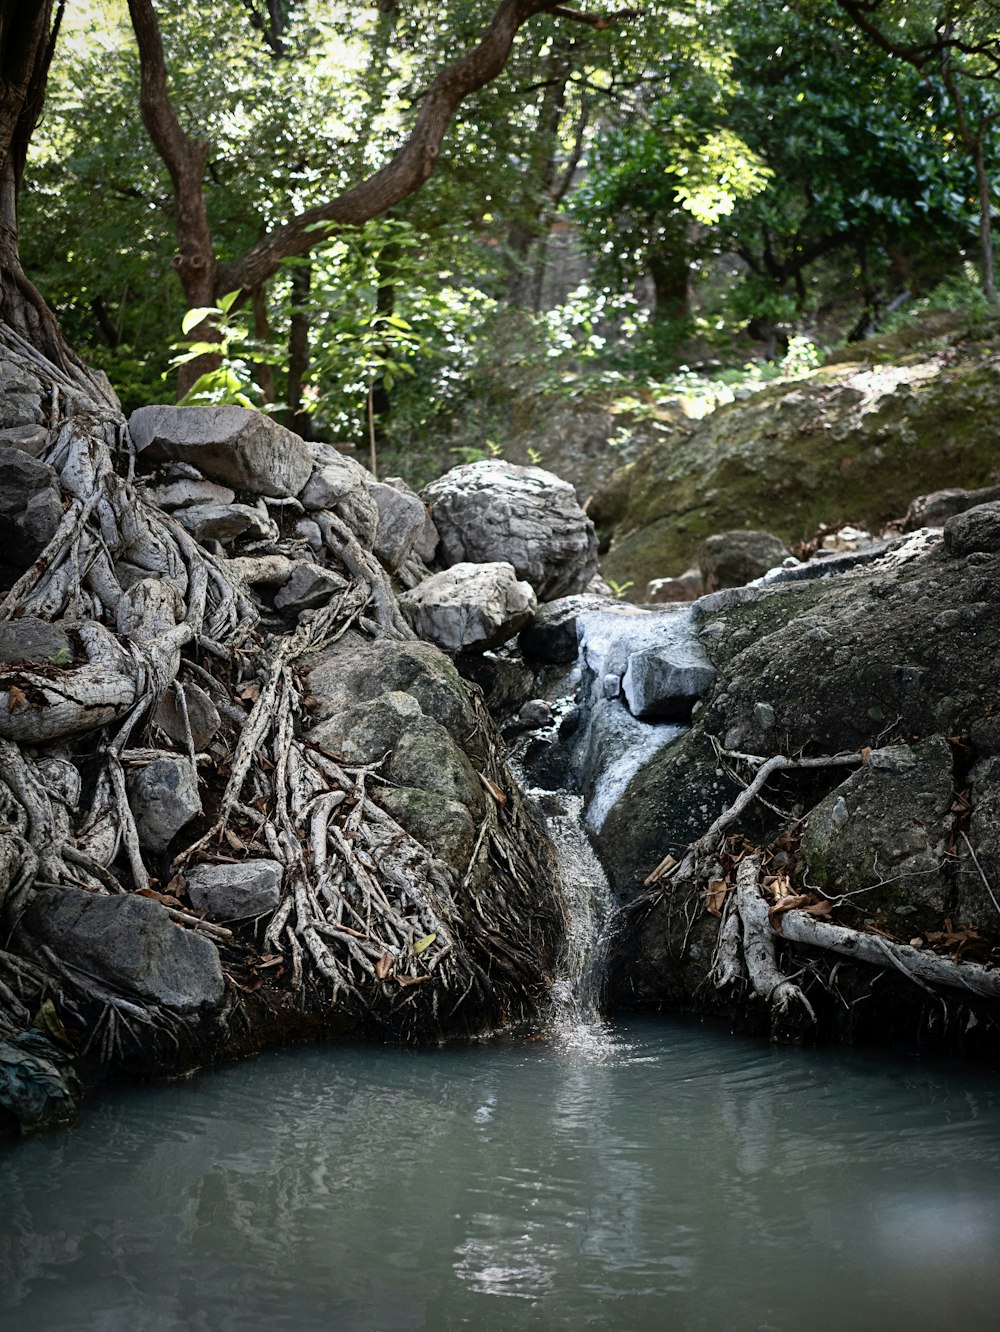 울창한 녹색 숲을 흐르는 물줄기